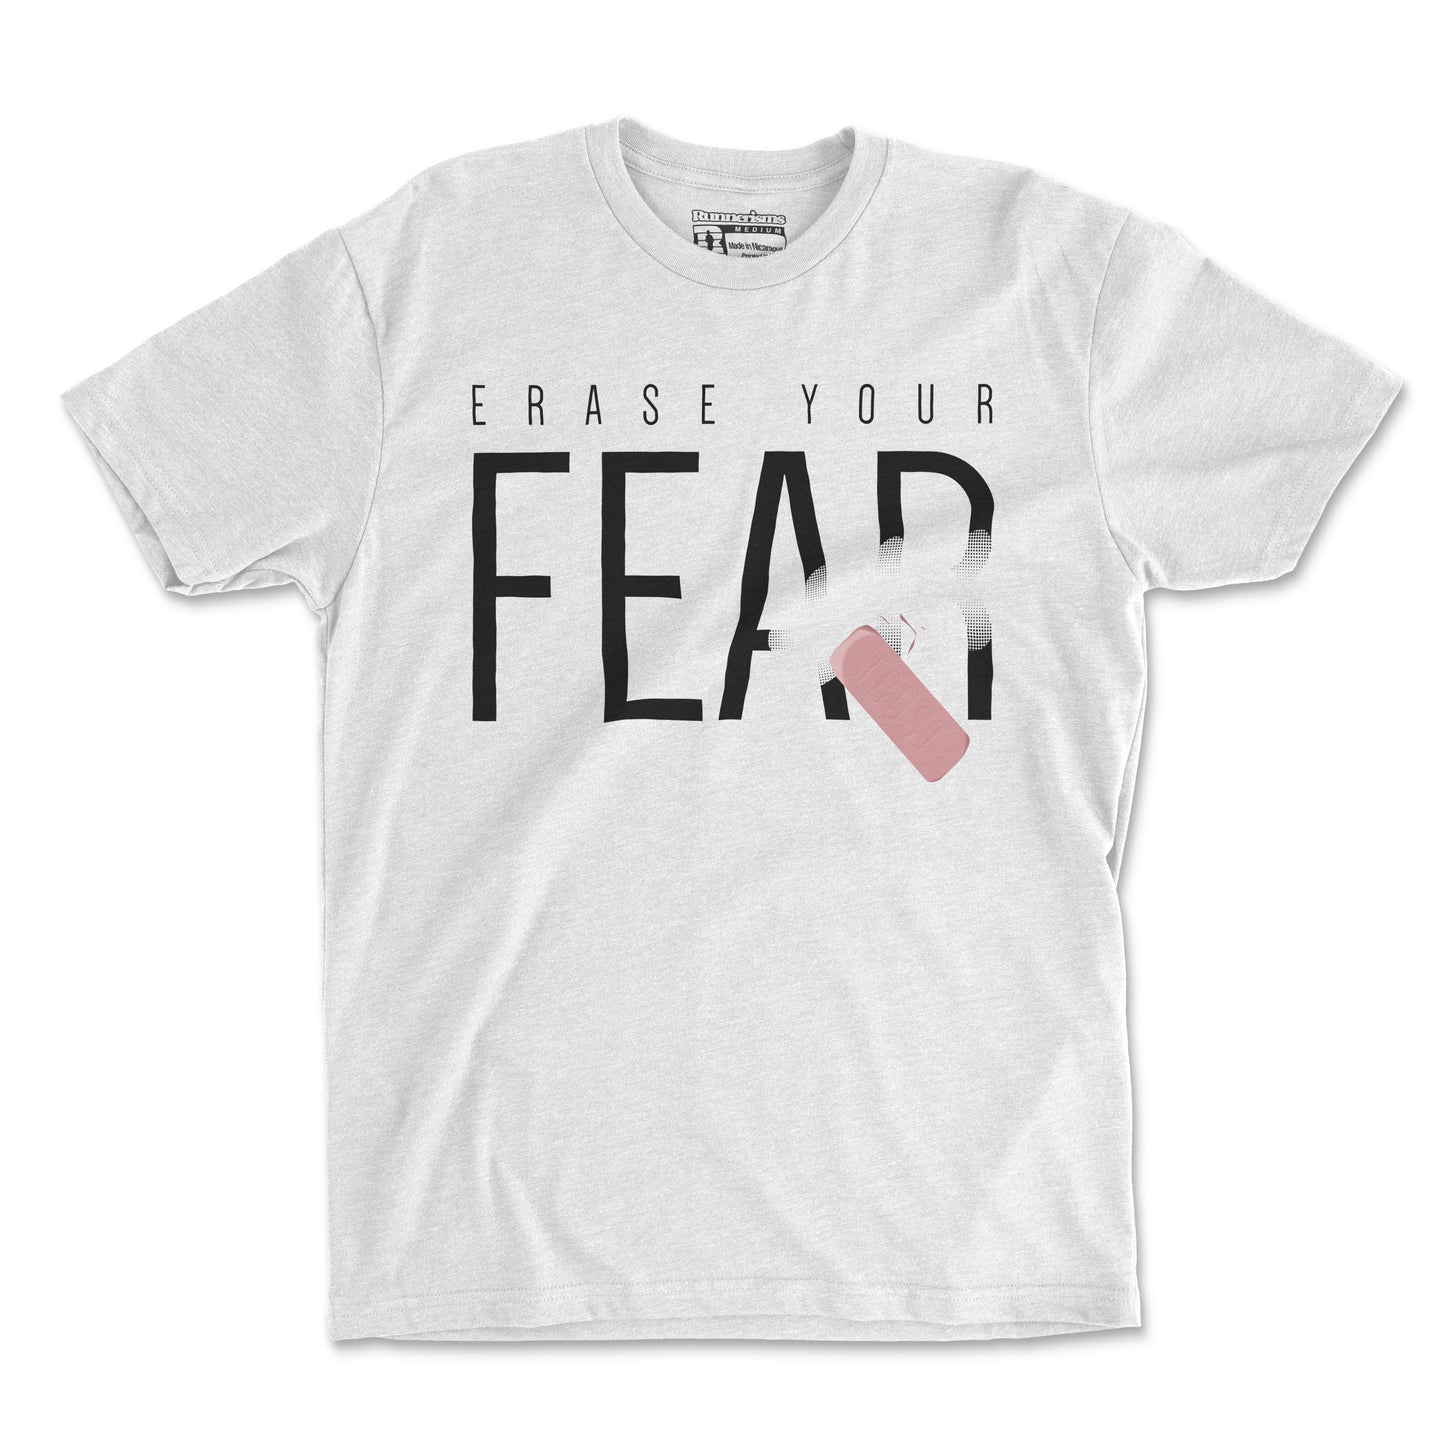 Erase Your Fear - Unisex T Shirt